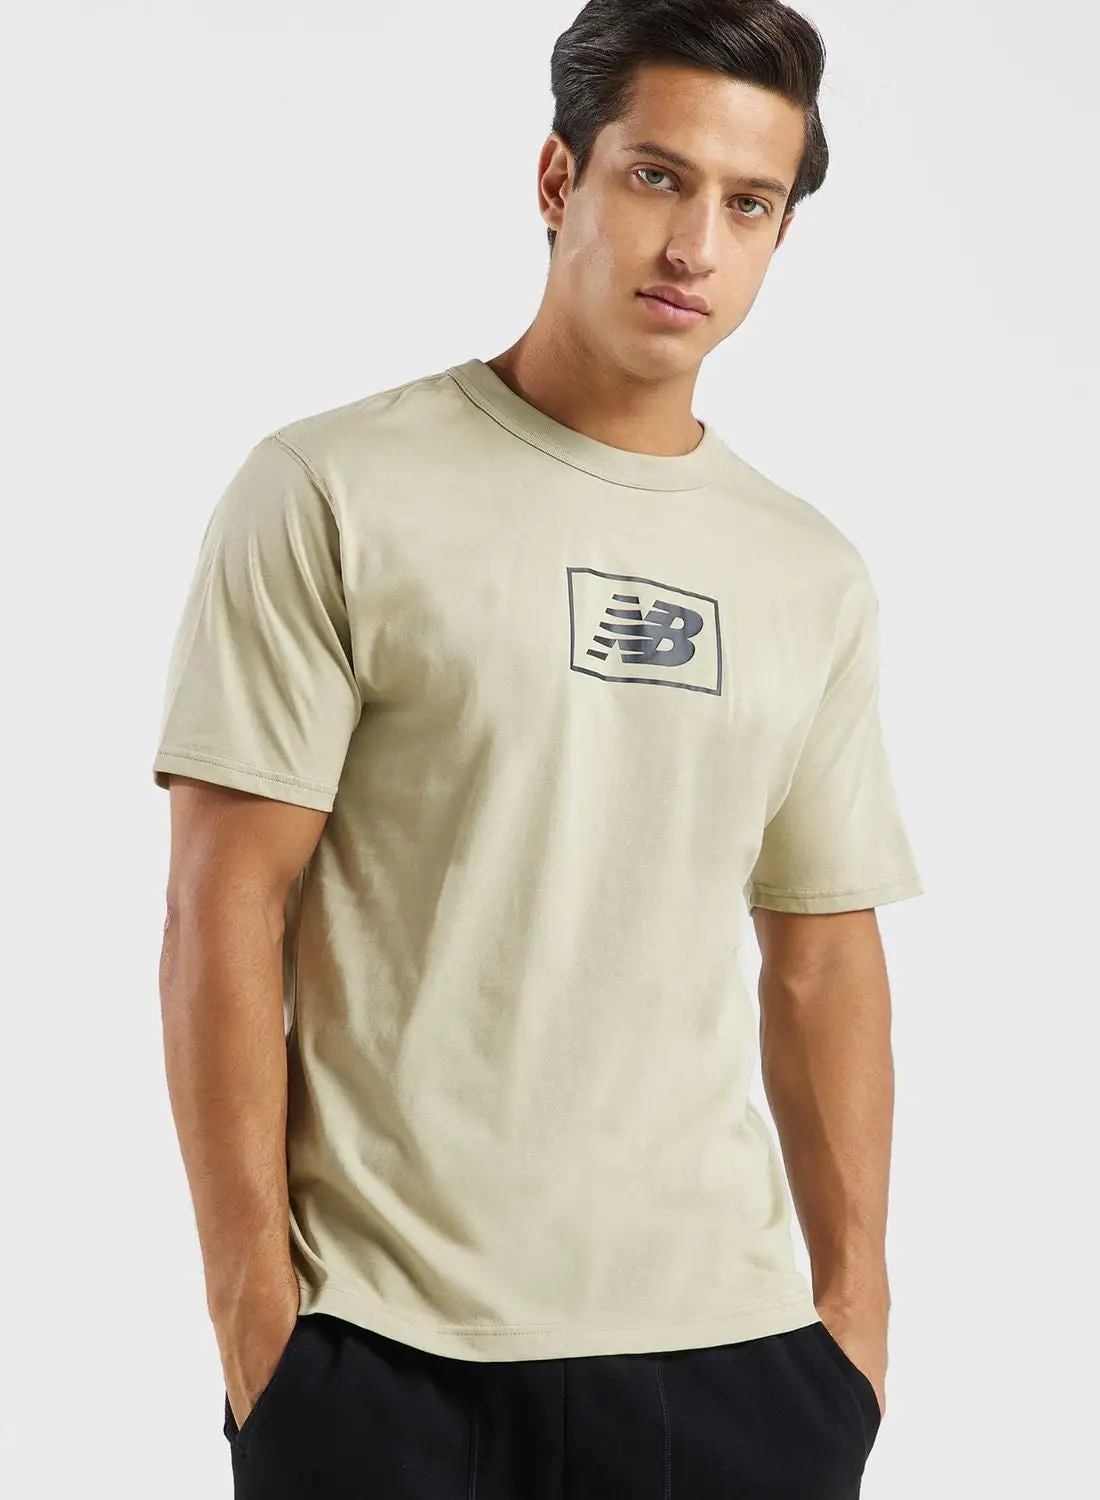 New Balance Essentials Logo T-Shirt